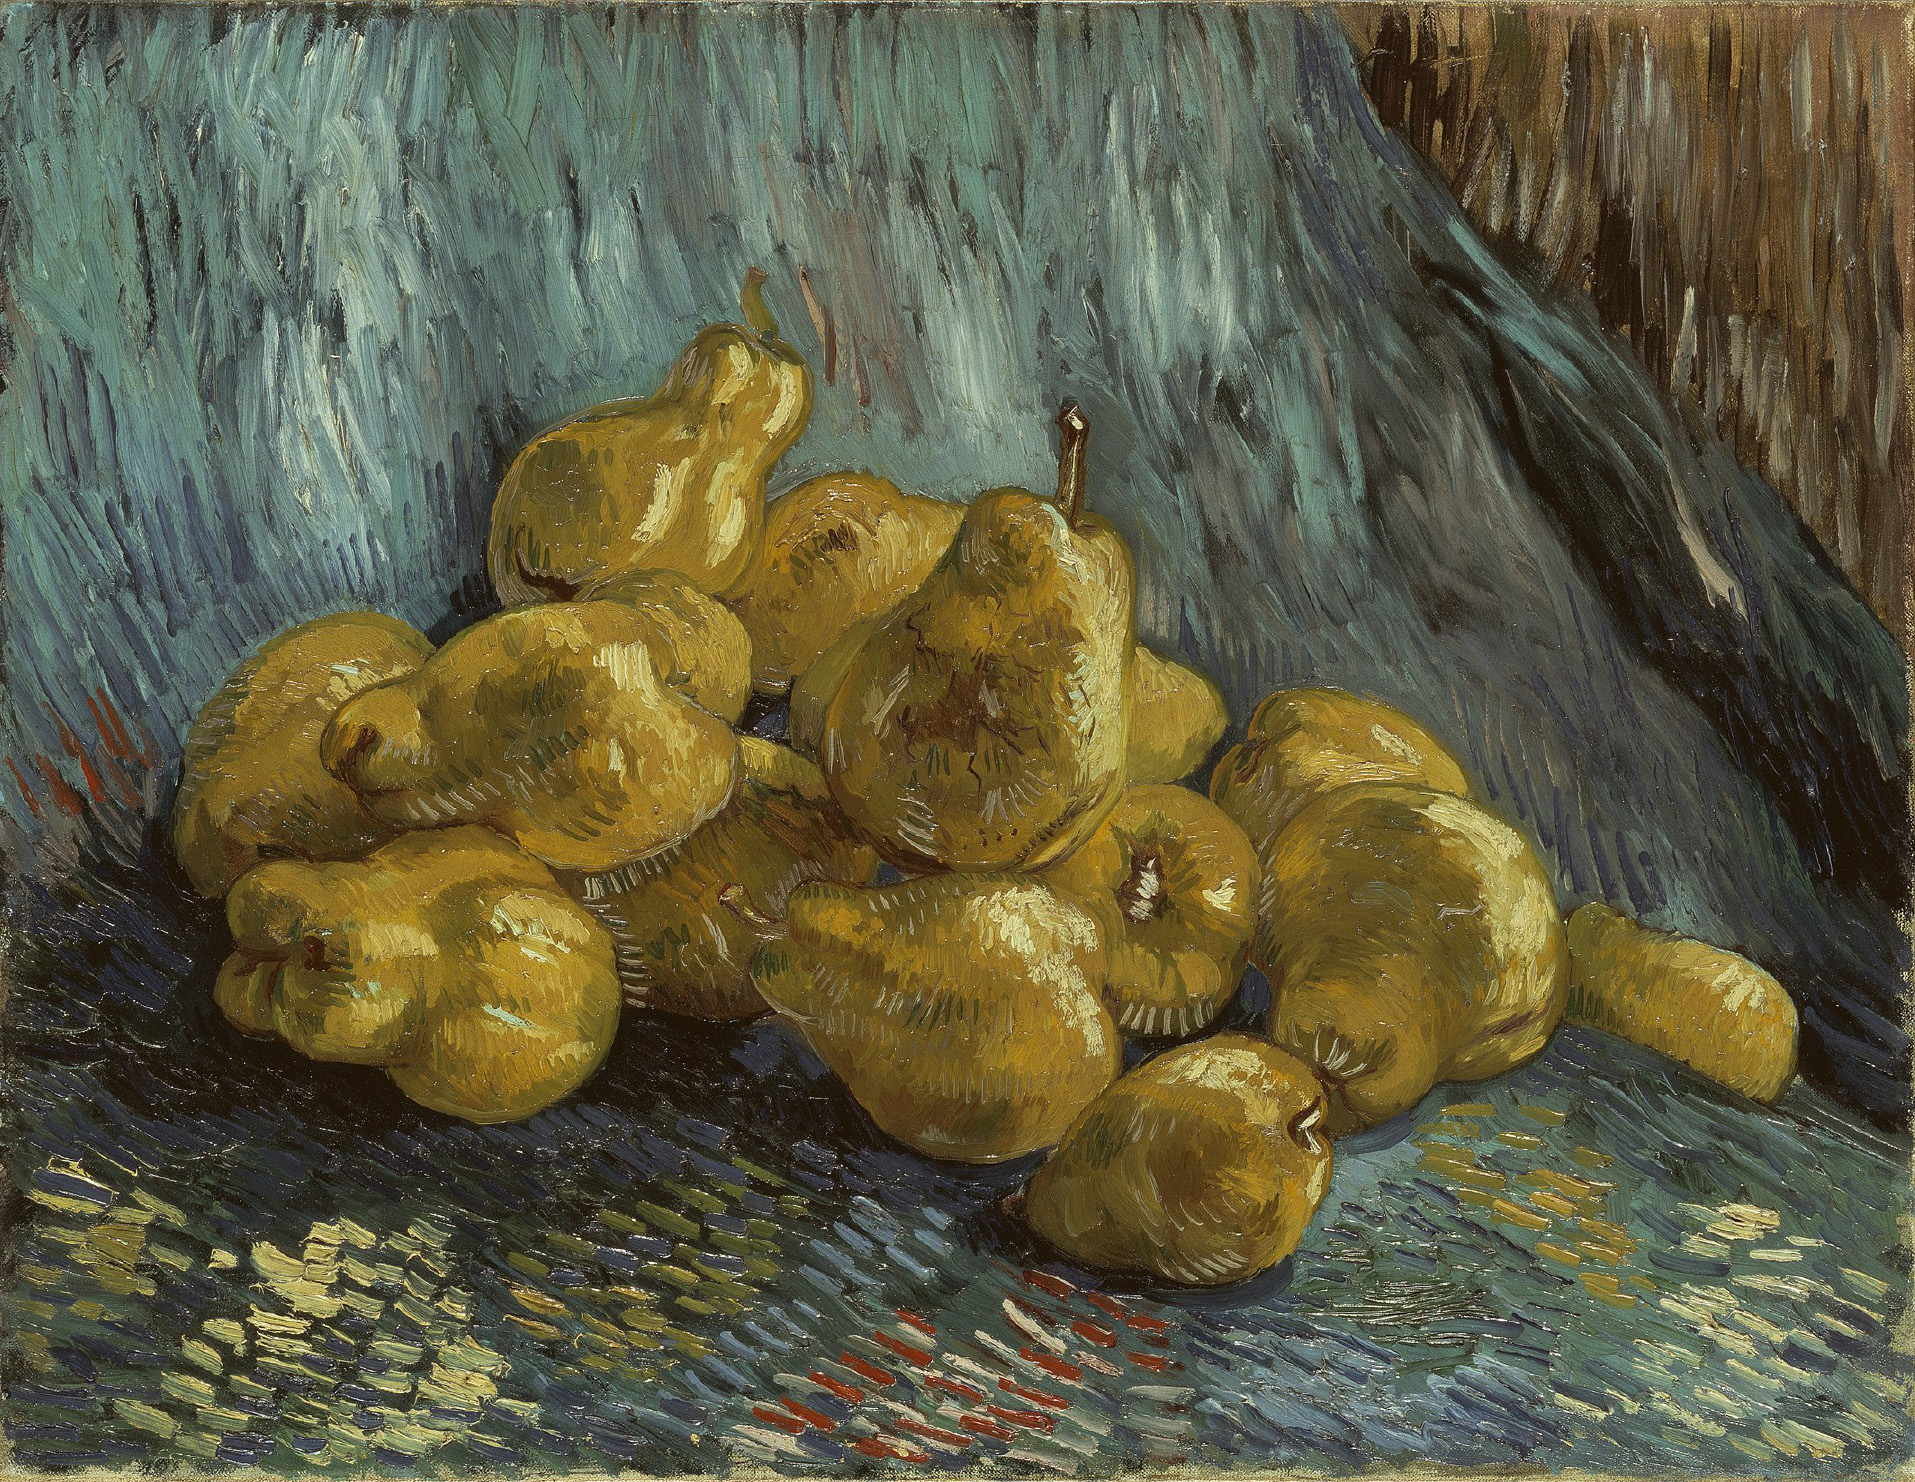 Still Life with Quinces by Vincent van Gogh - 1887/88 - 46 x 59,5 cm Staatliche Kunstsammlungen Dresden